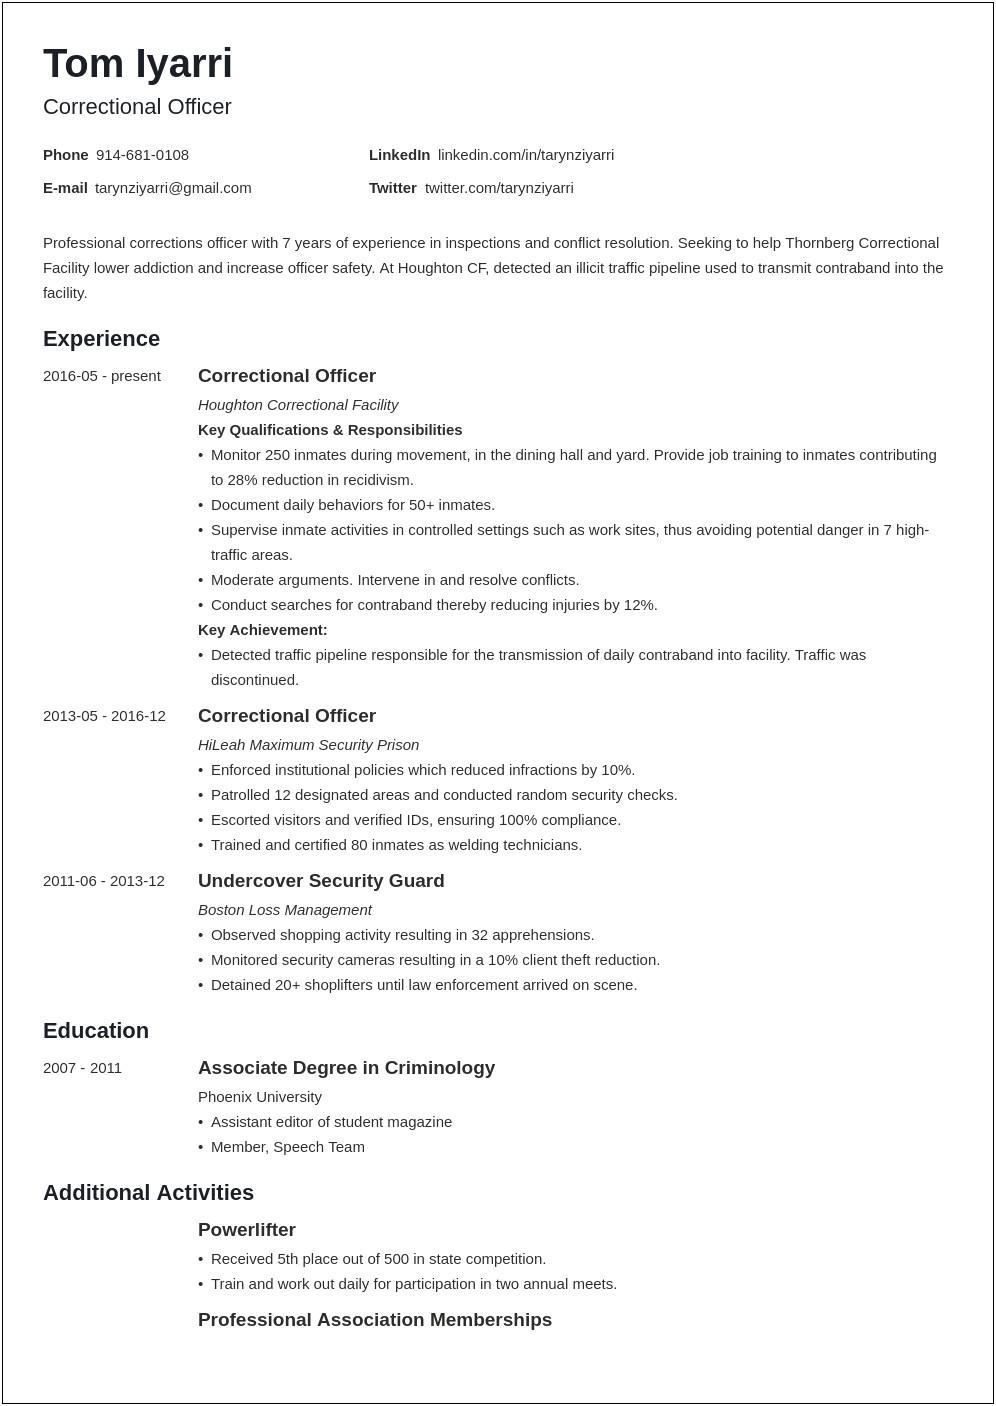 Corecivic Correctional Officer Job Description Resume